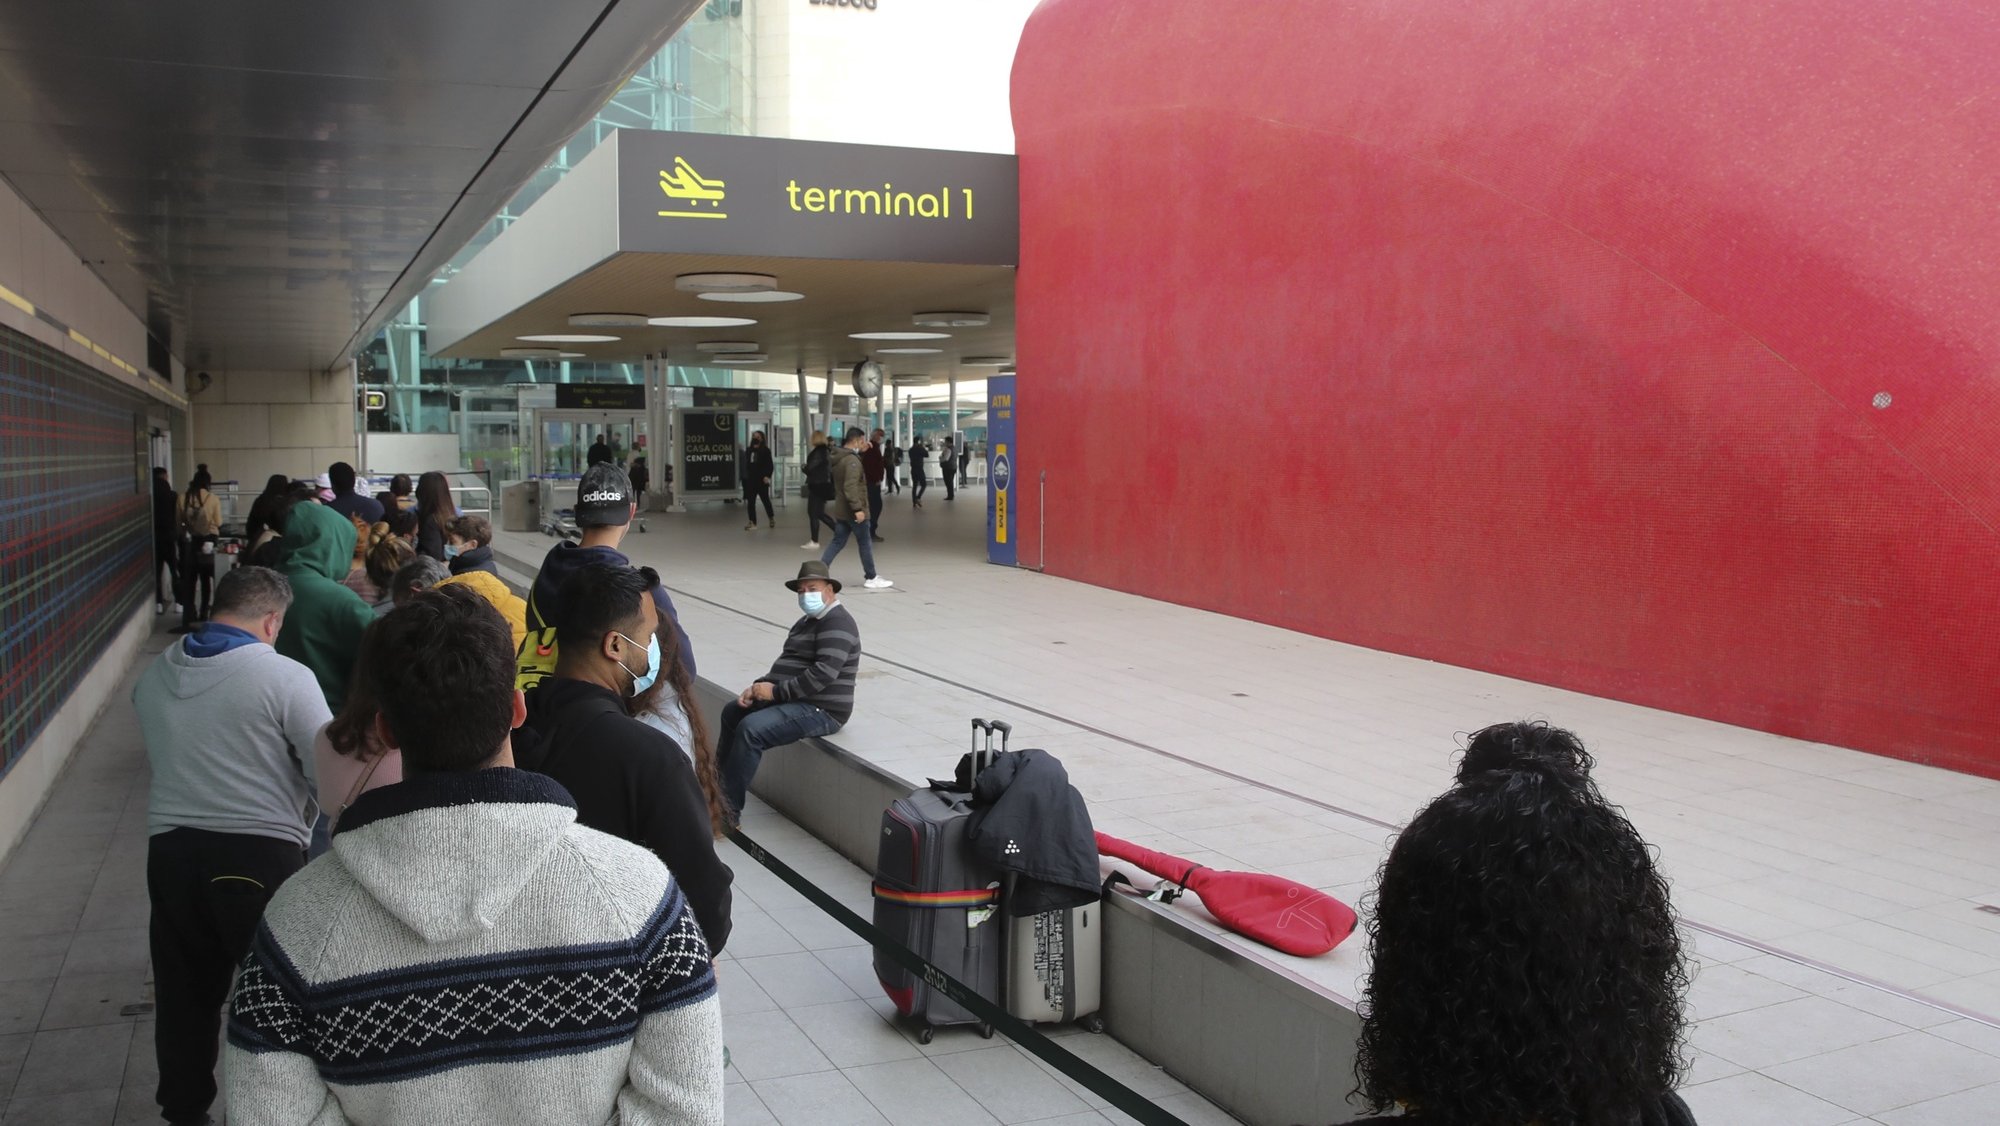 Passageiros aguardam na fila para testes à covid-19 no Aeroporto de Lisboa, responsável do laboratório diz que filas existem porque é o único local aberto em Lisboa para fazer teste Covid, 02 de janeiro de 2022. MANUEL ALMEIDA/LUSA